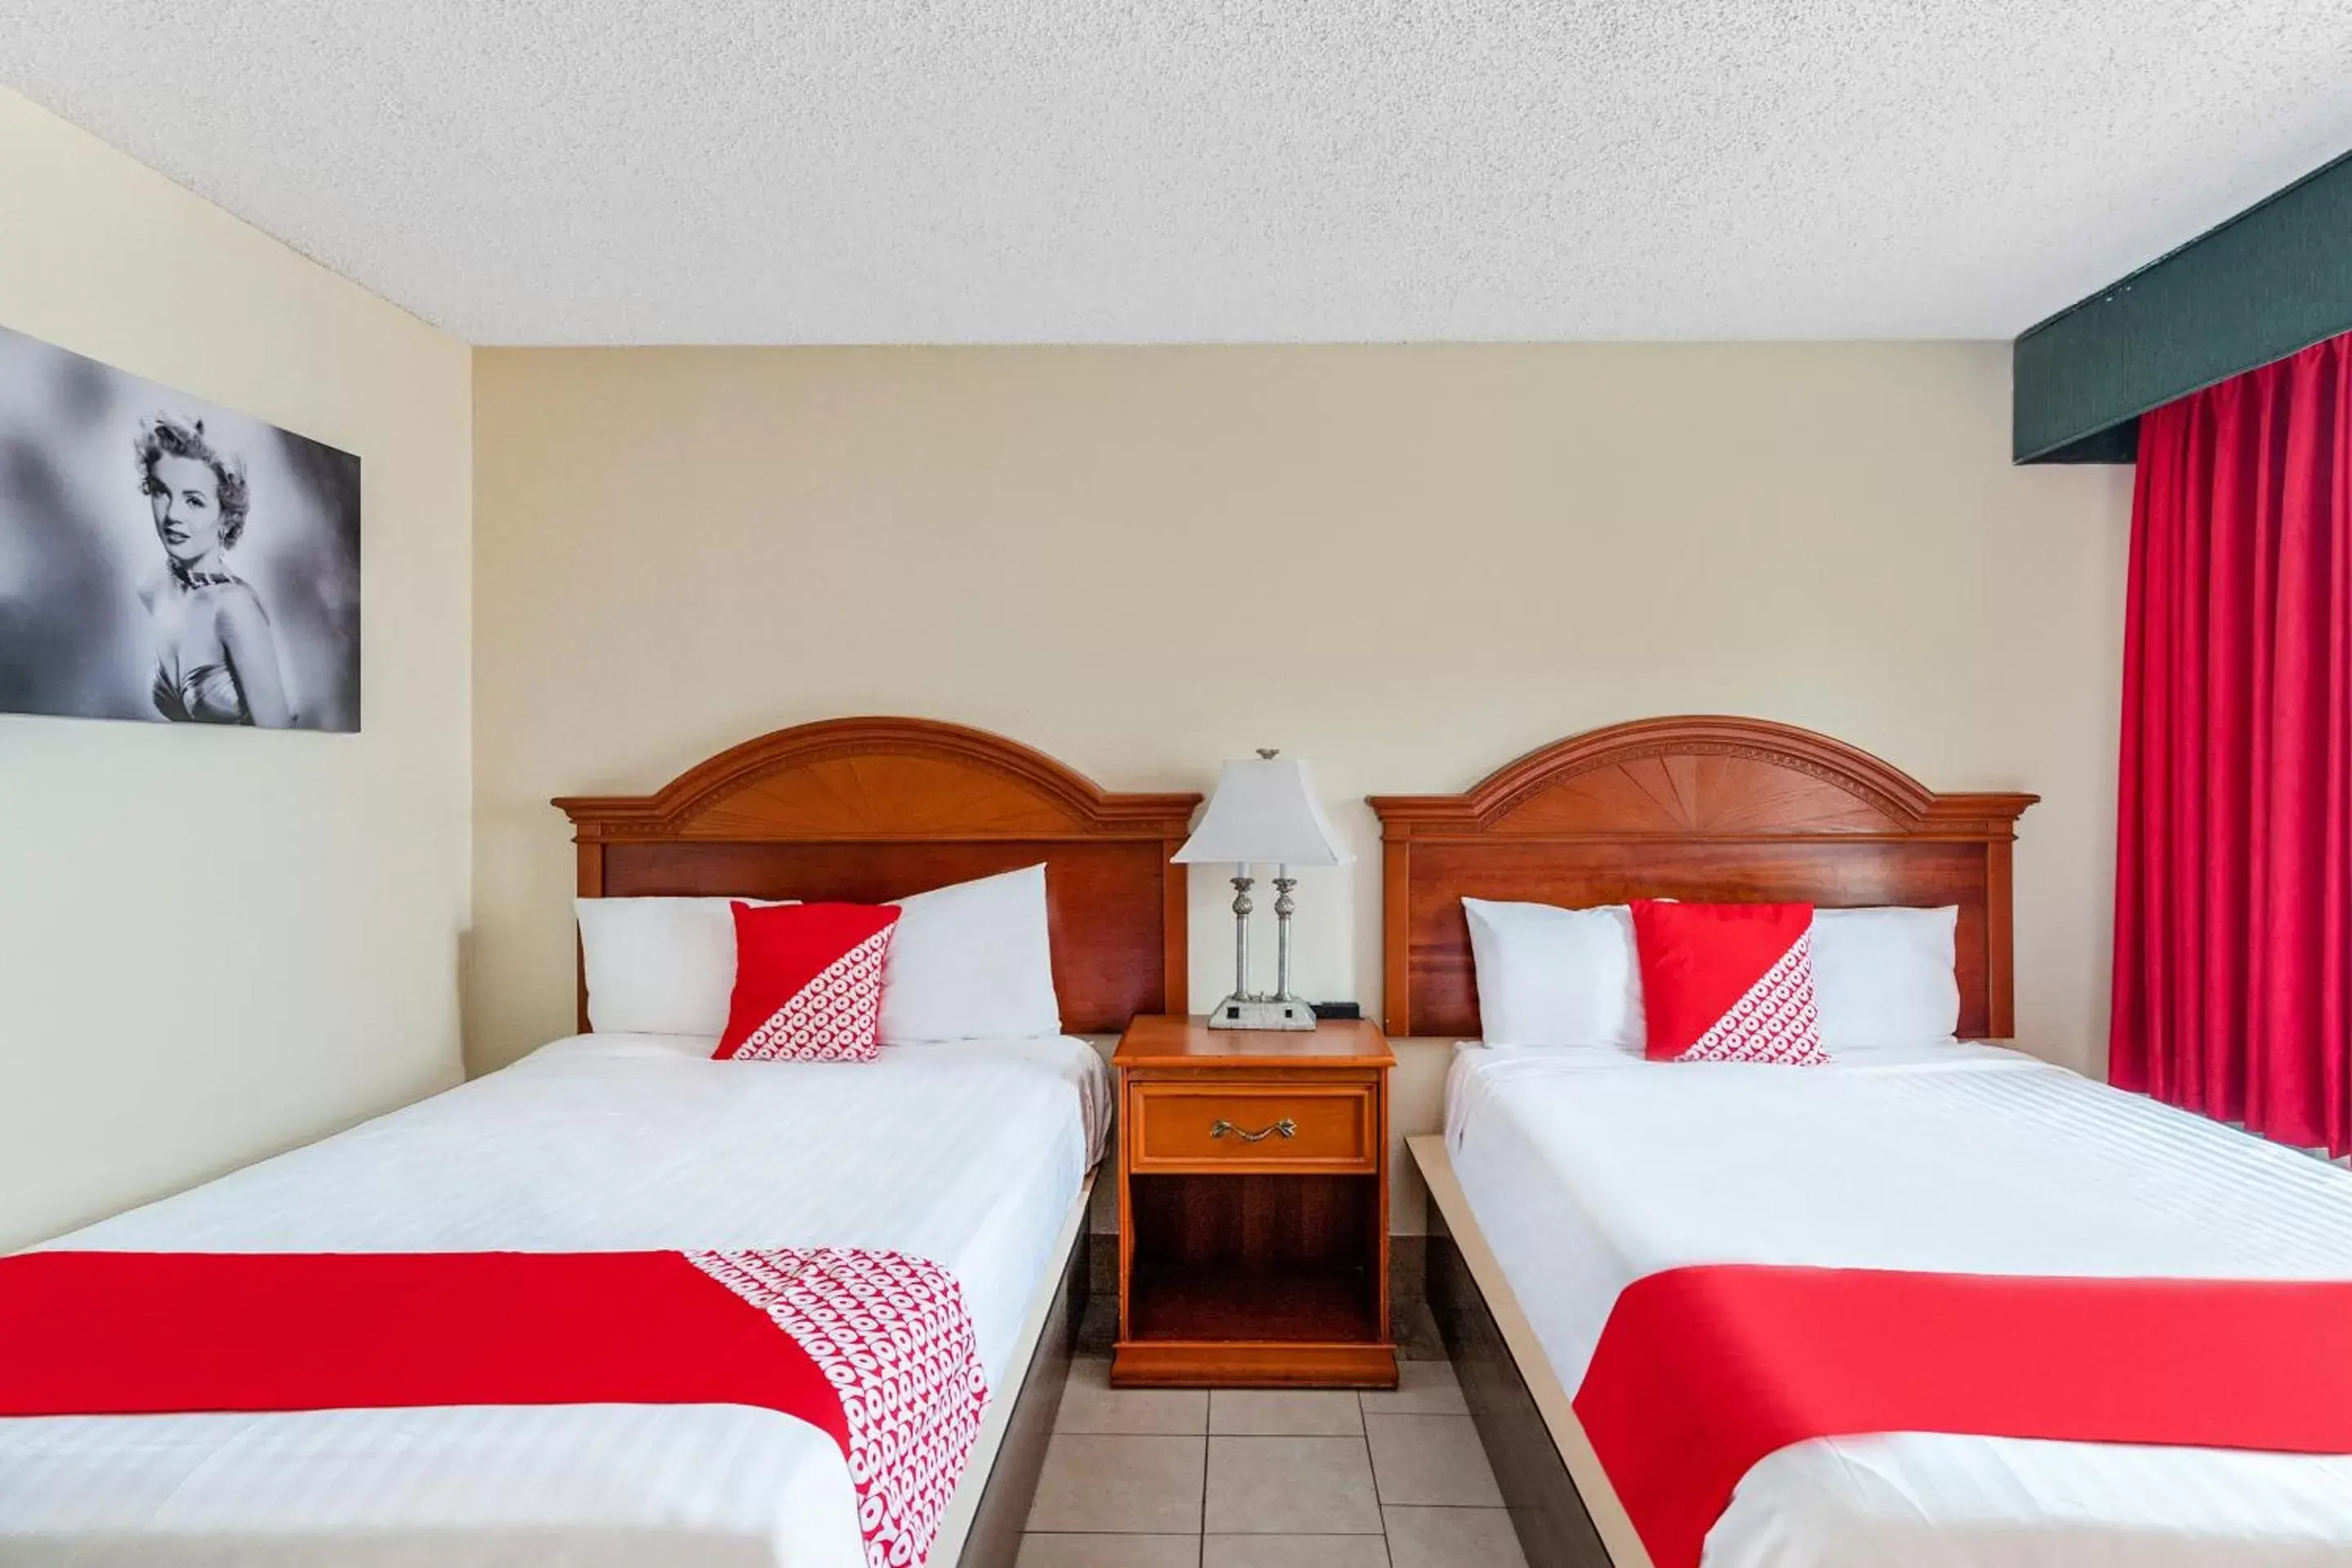 Bedroom, Room Photo in OYO Hotel San Antonio Lackland near Seaworld